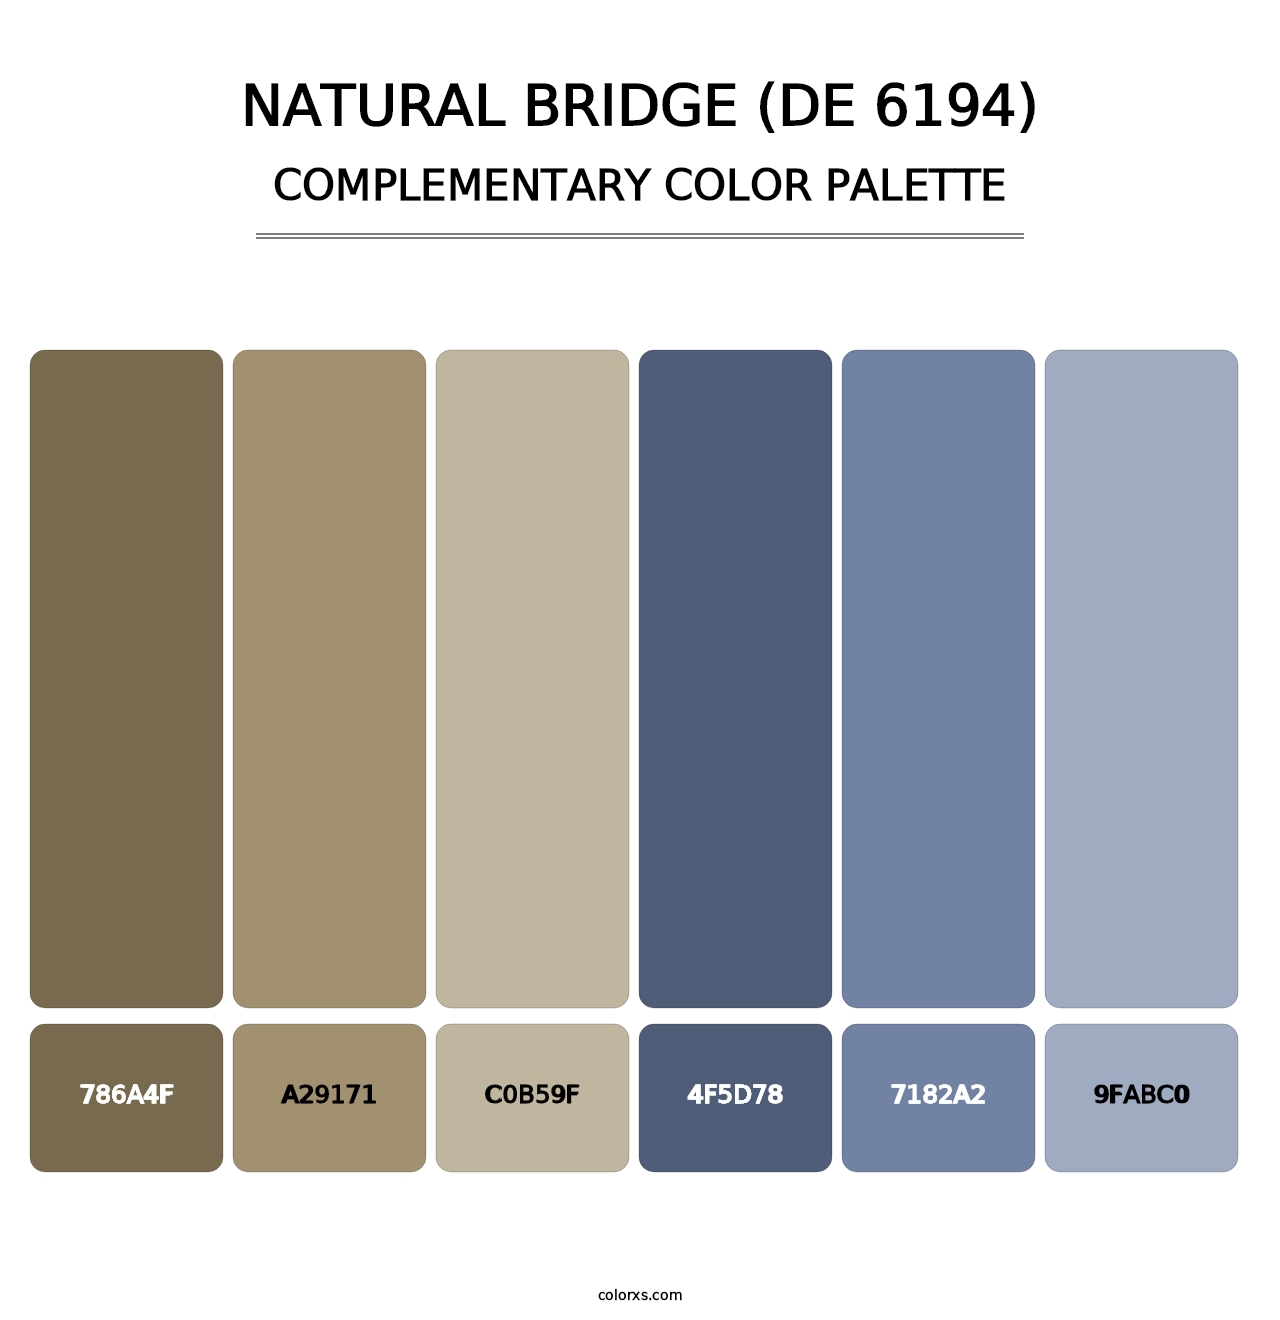 Natural Bridge (DE 6194) - Complementary Color Palette